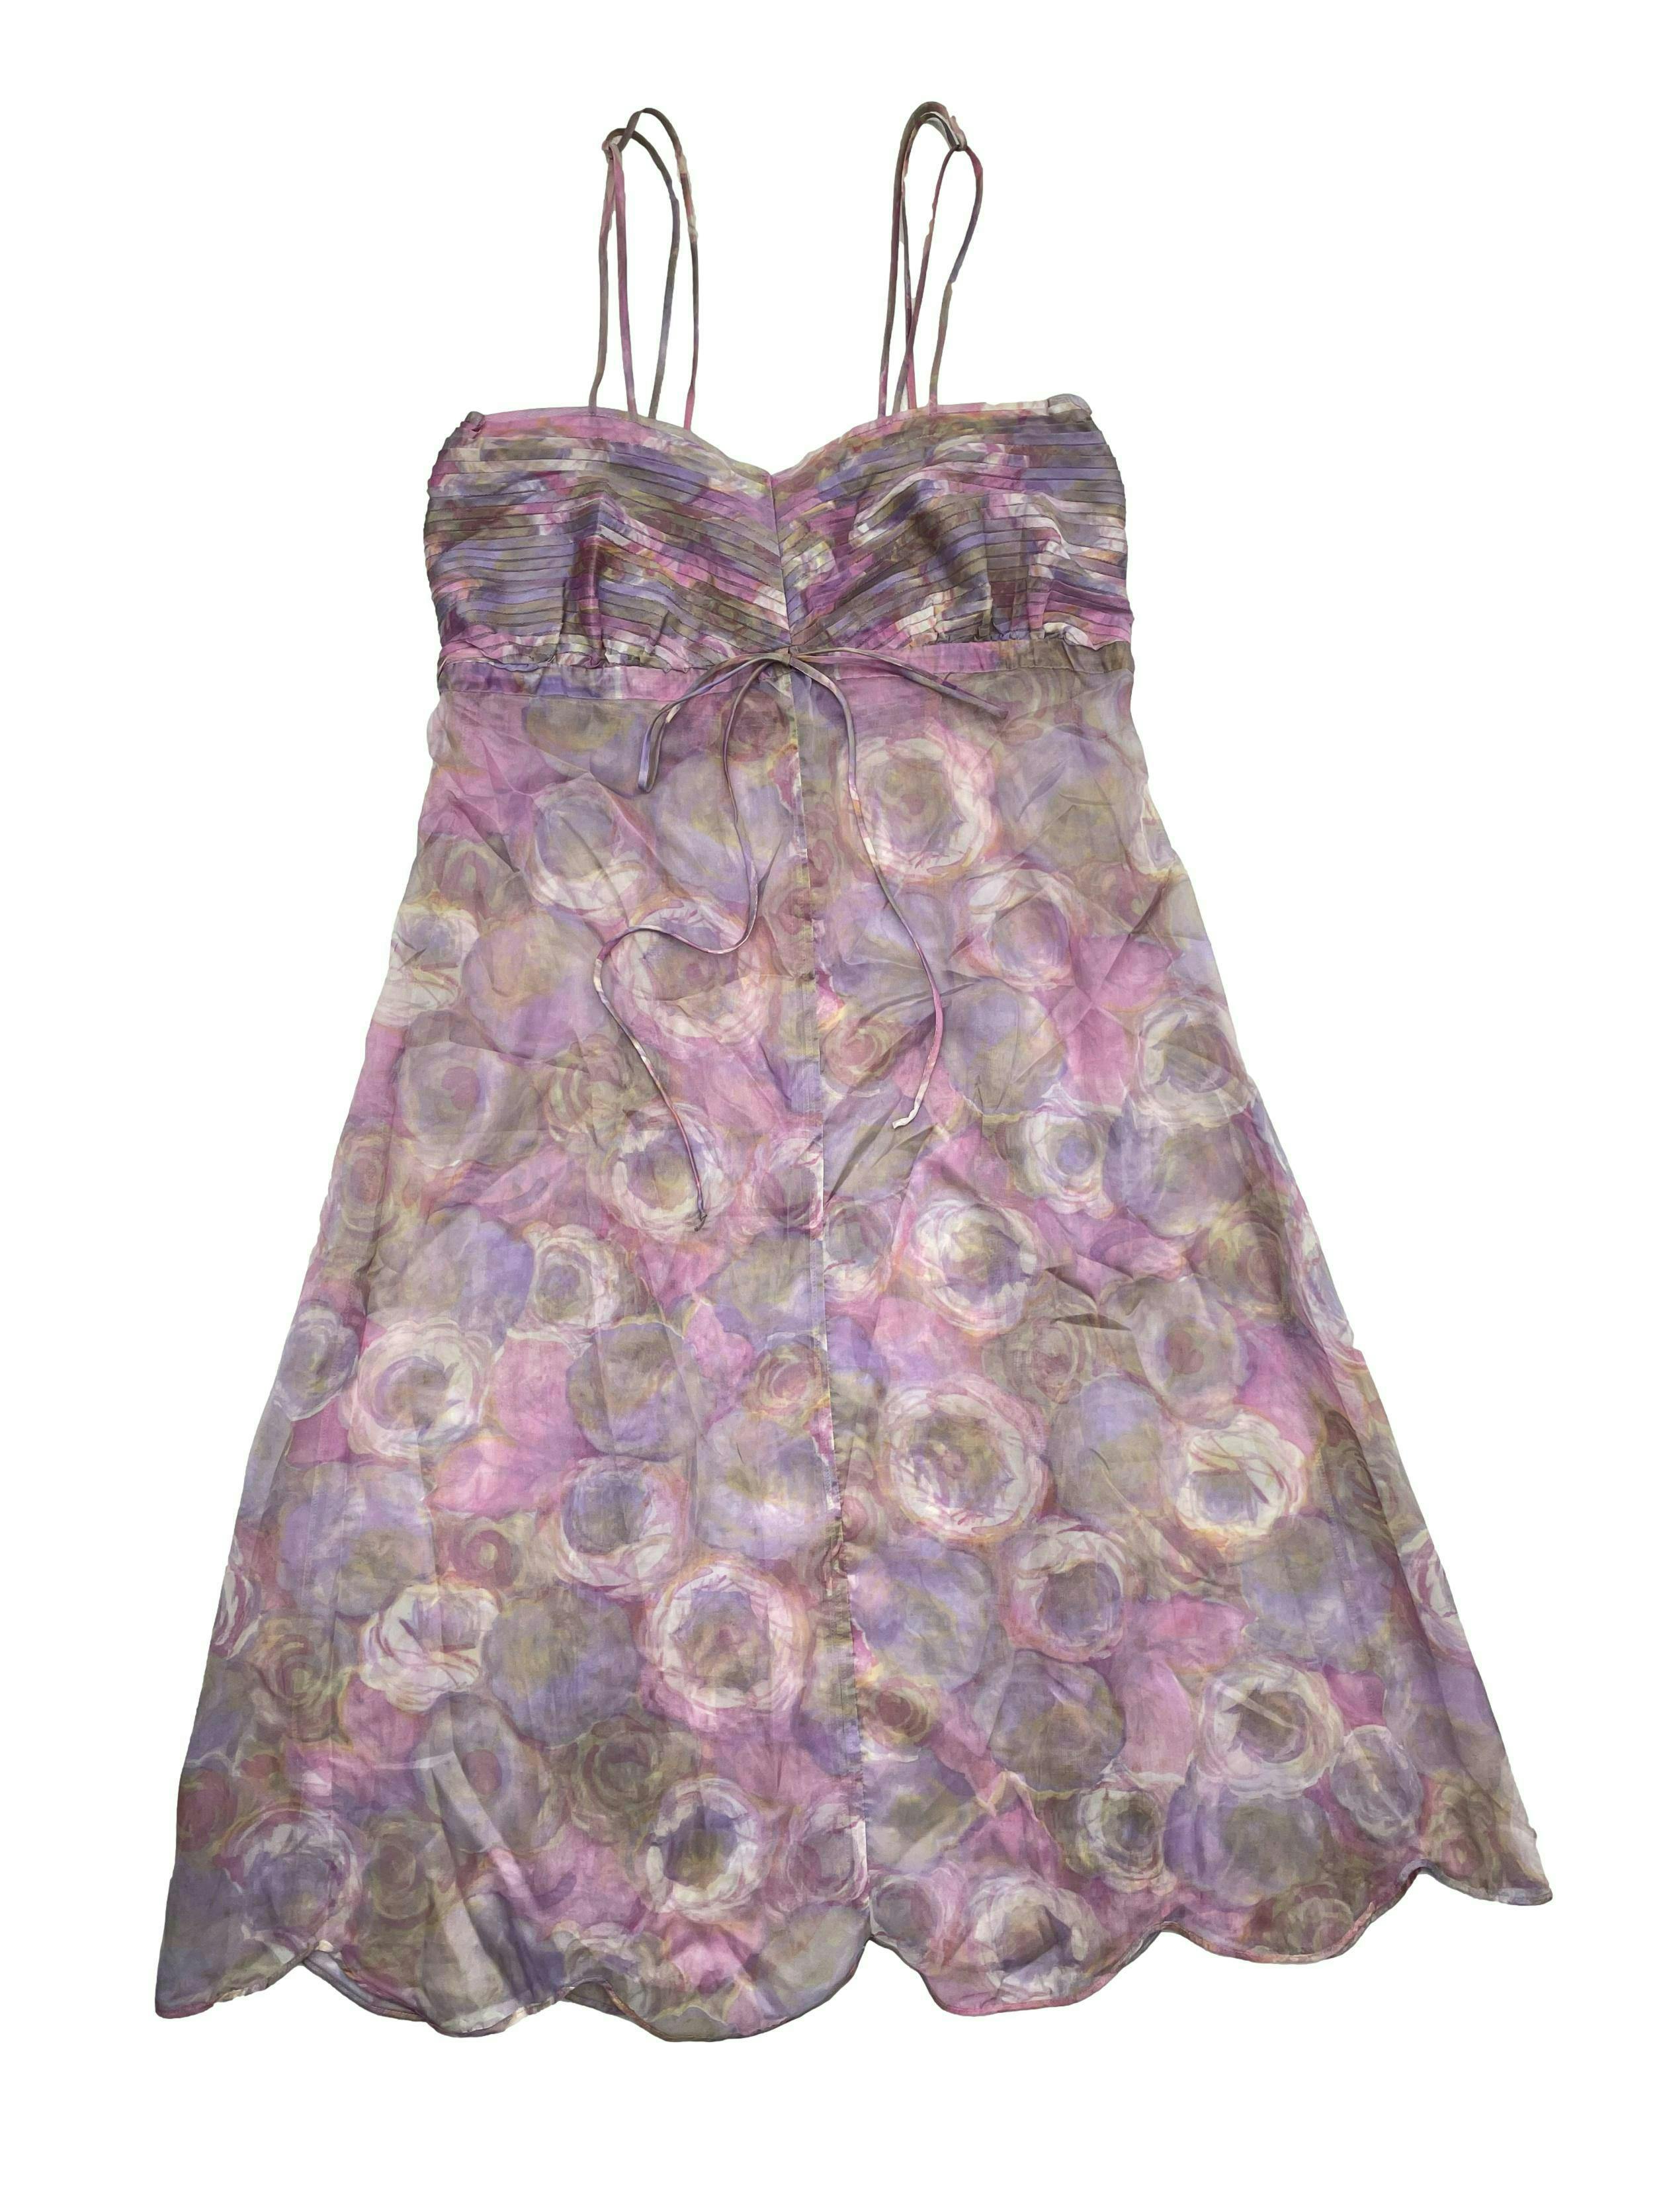 Vestido vintage, gasa gruesa translucida en tonos lilas, pecho drapeado con cinto ajustable bajo busto. Busto 95cm, Largo 112cm.